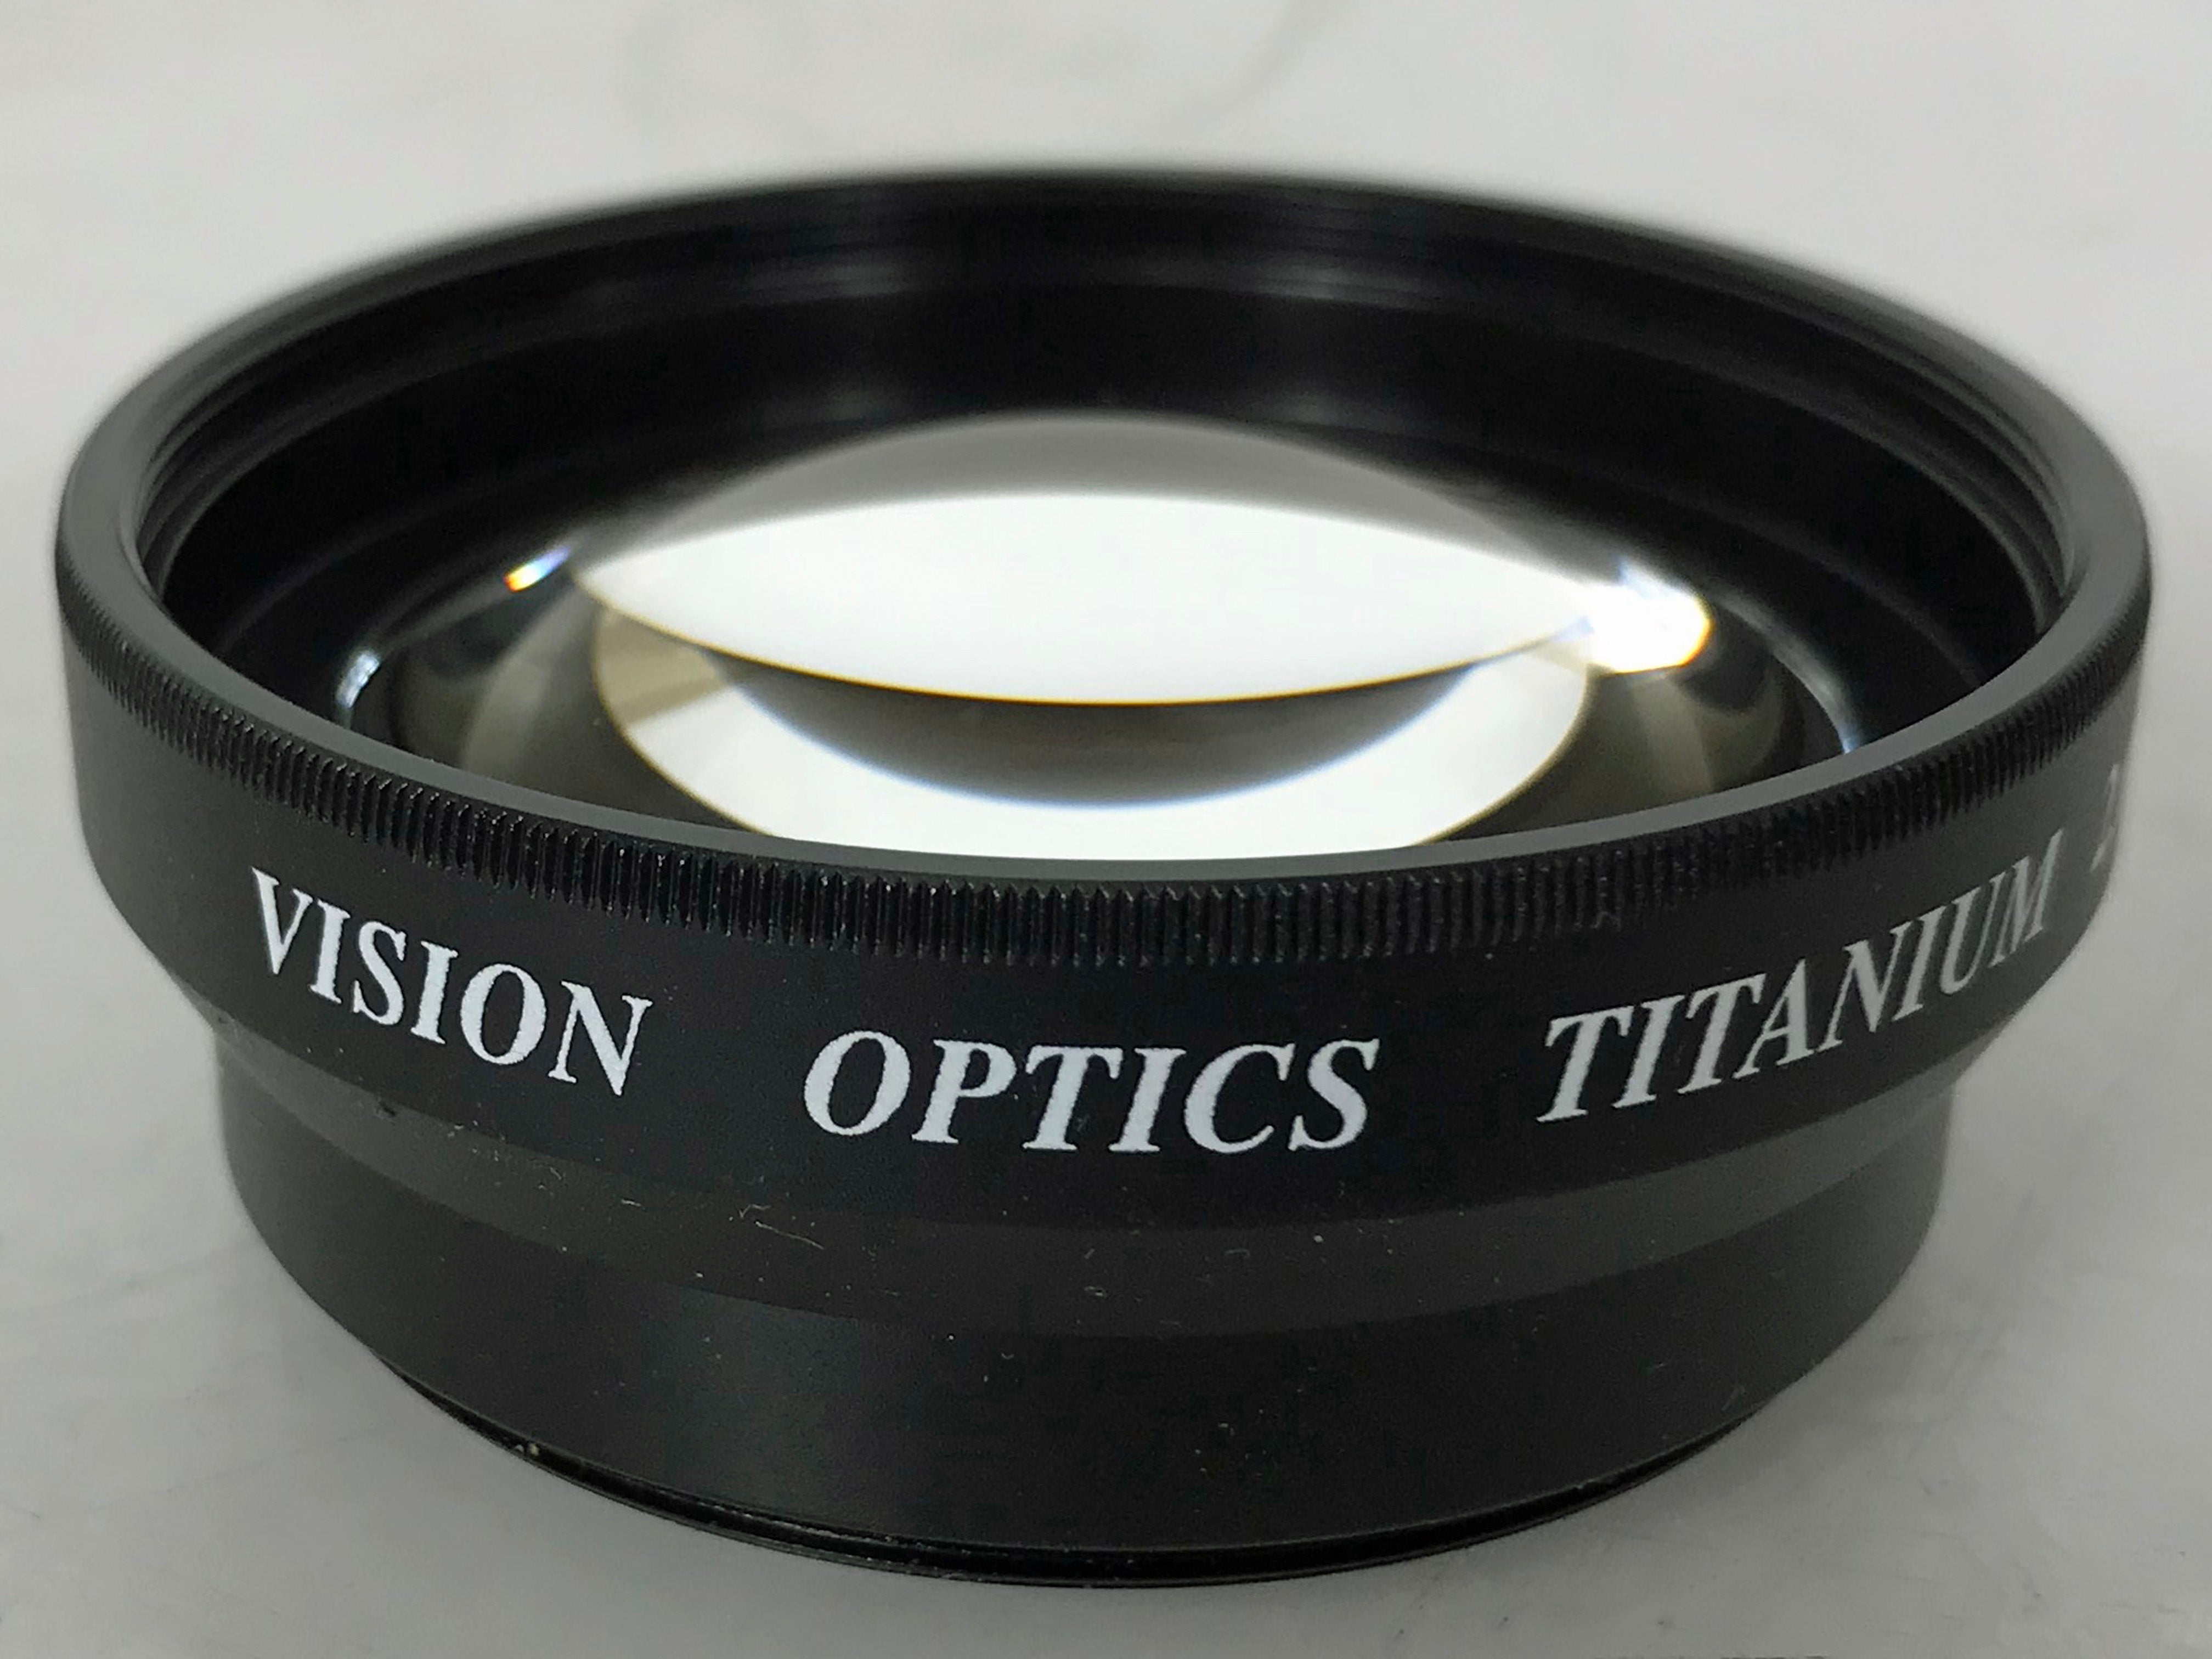 Vision Optics Titanium 2.0x Digital Tele Lens